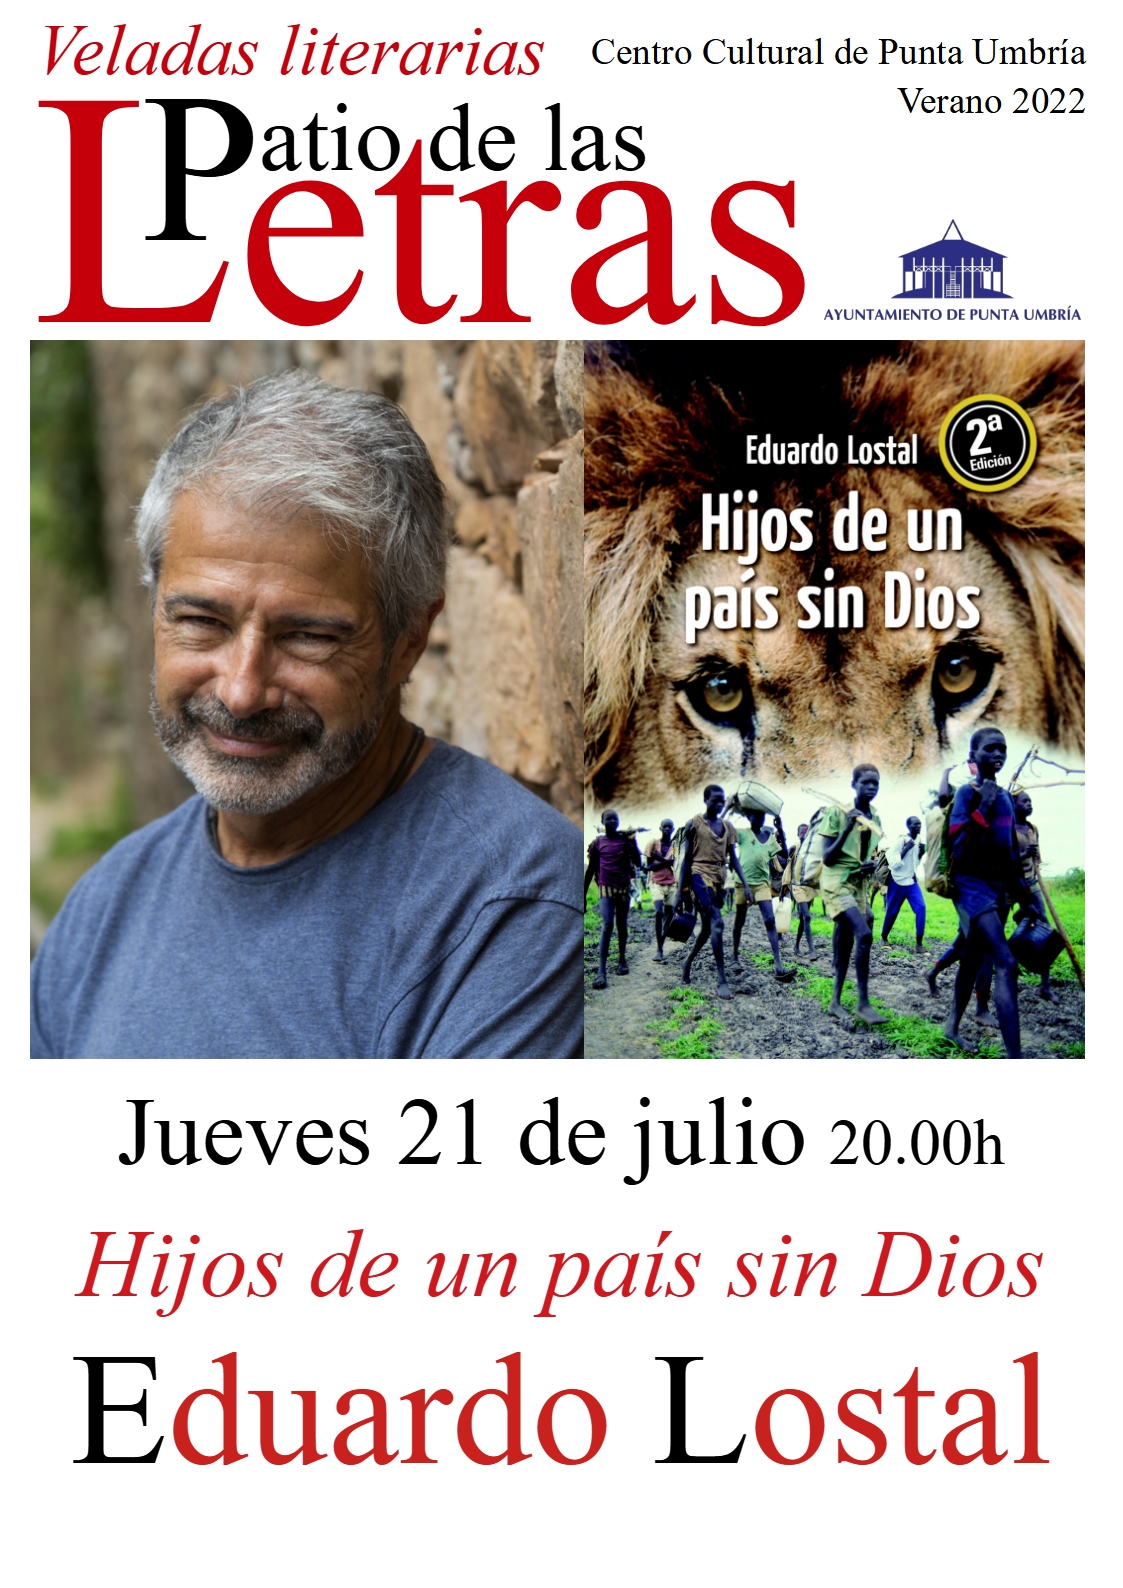 Eduardo lostal presenta mañana en Punta Umbría 'Hijos de un país sin Dios'